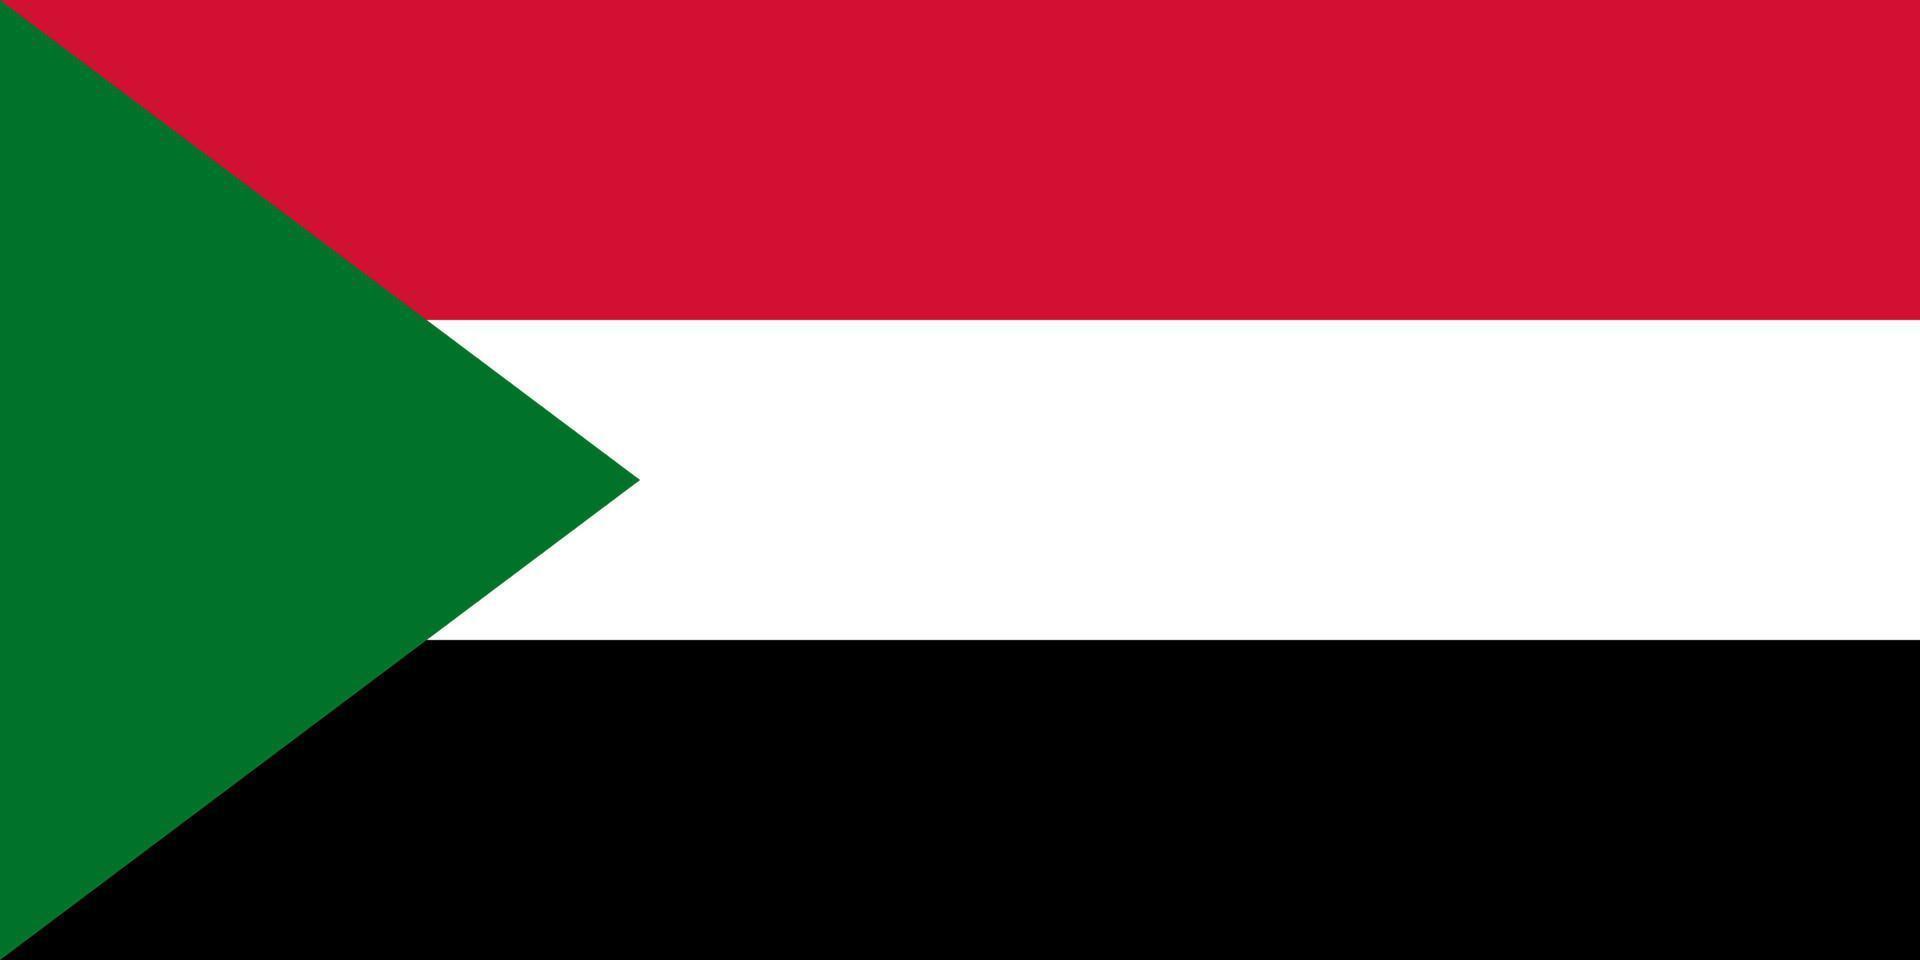 bandera de sudán, simple, ilustración, para, independencia, día, o, elección vector